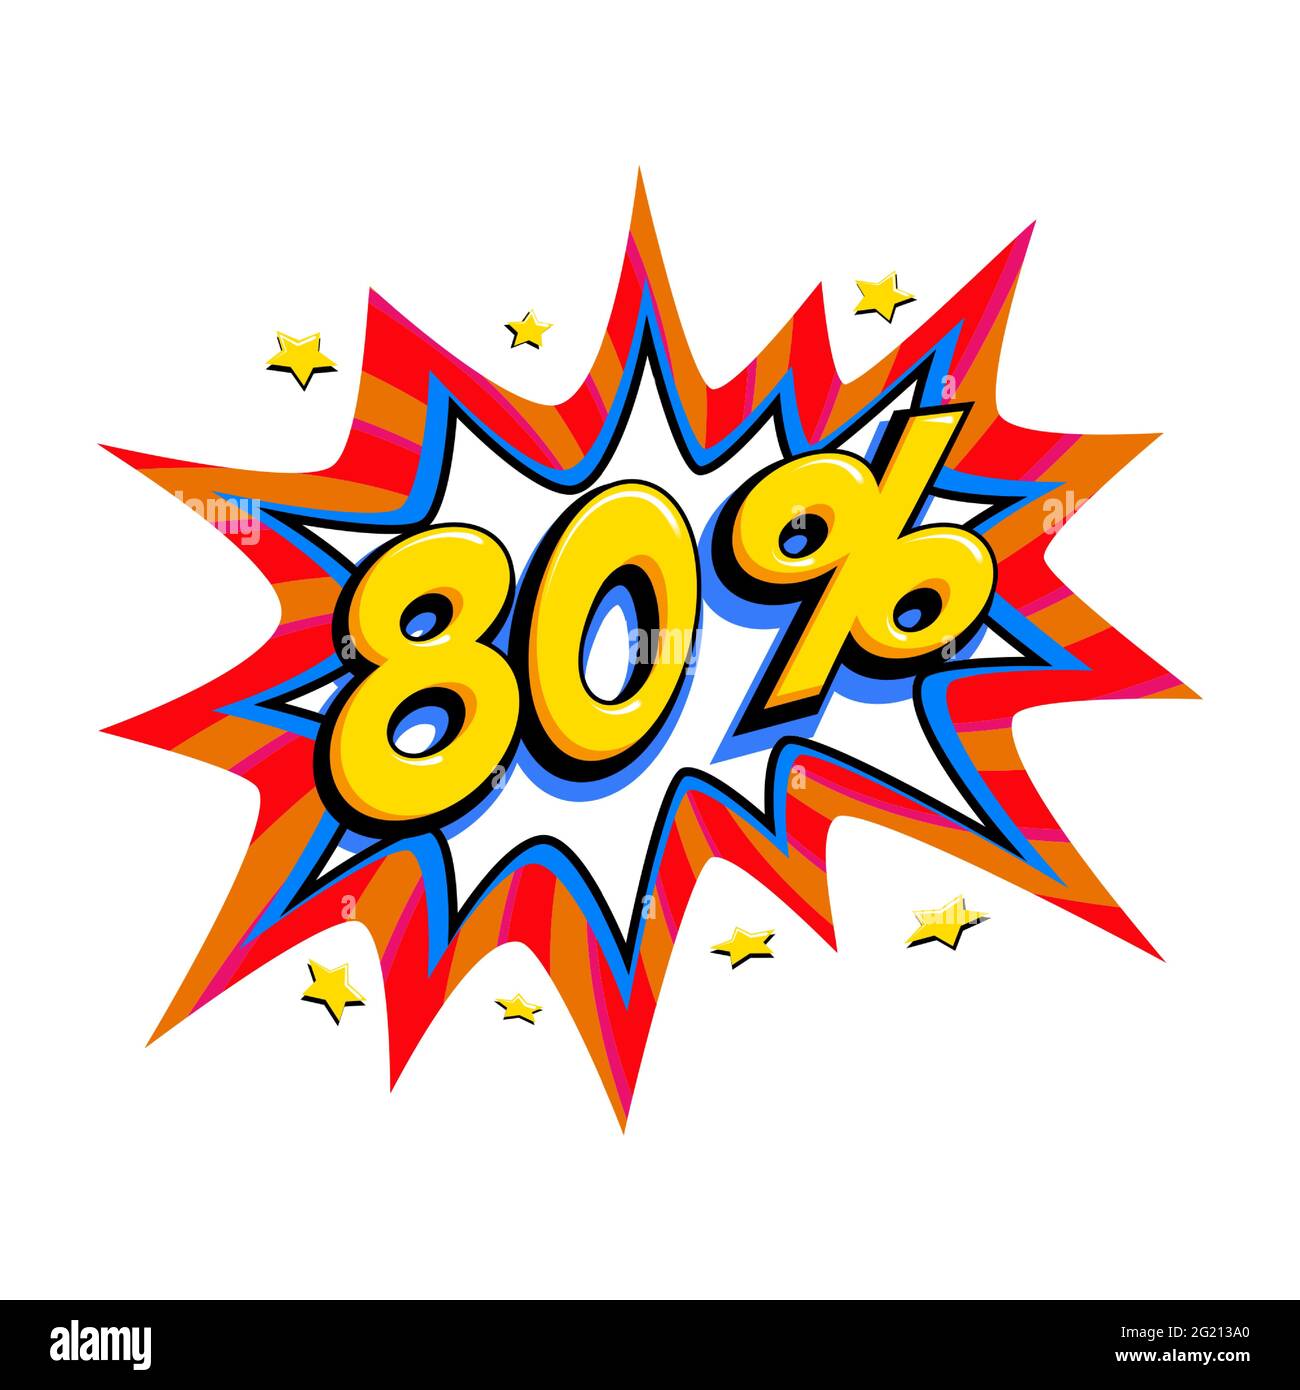 80 de rabais. Bande dessinée rouge solde bulle - Pop art style promotion bannière. Illustration vectorielle. Illustration de Vecteur